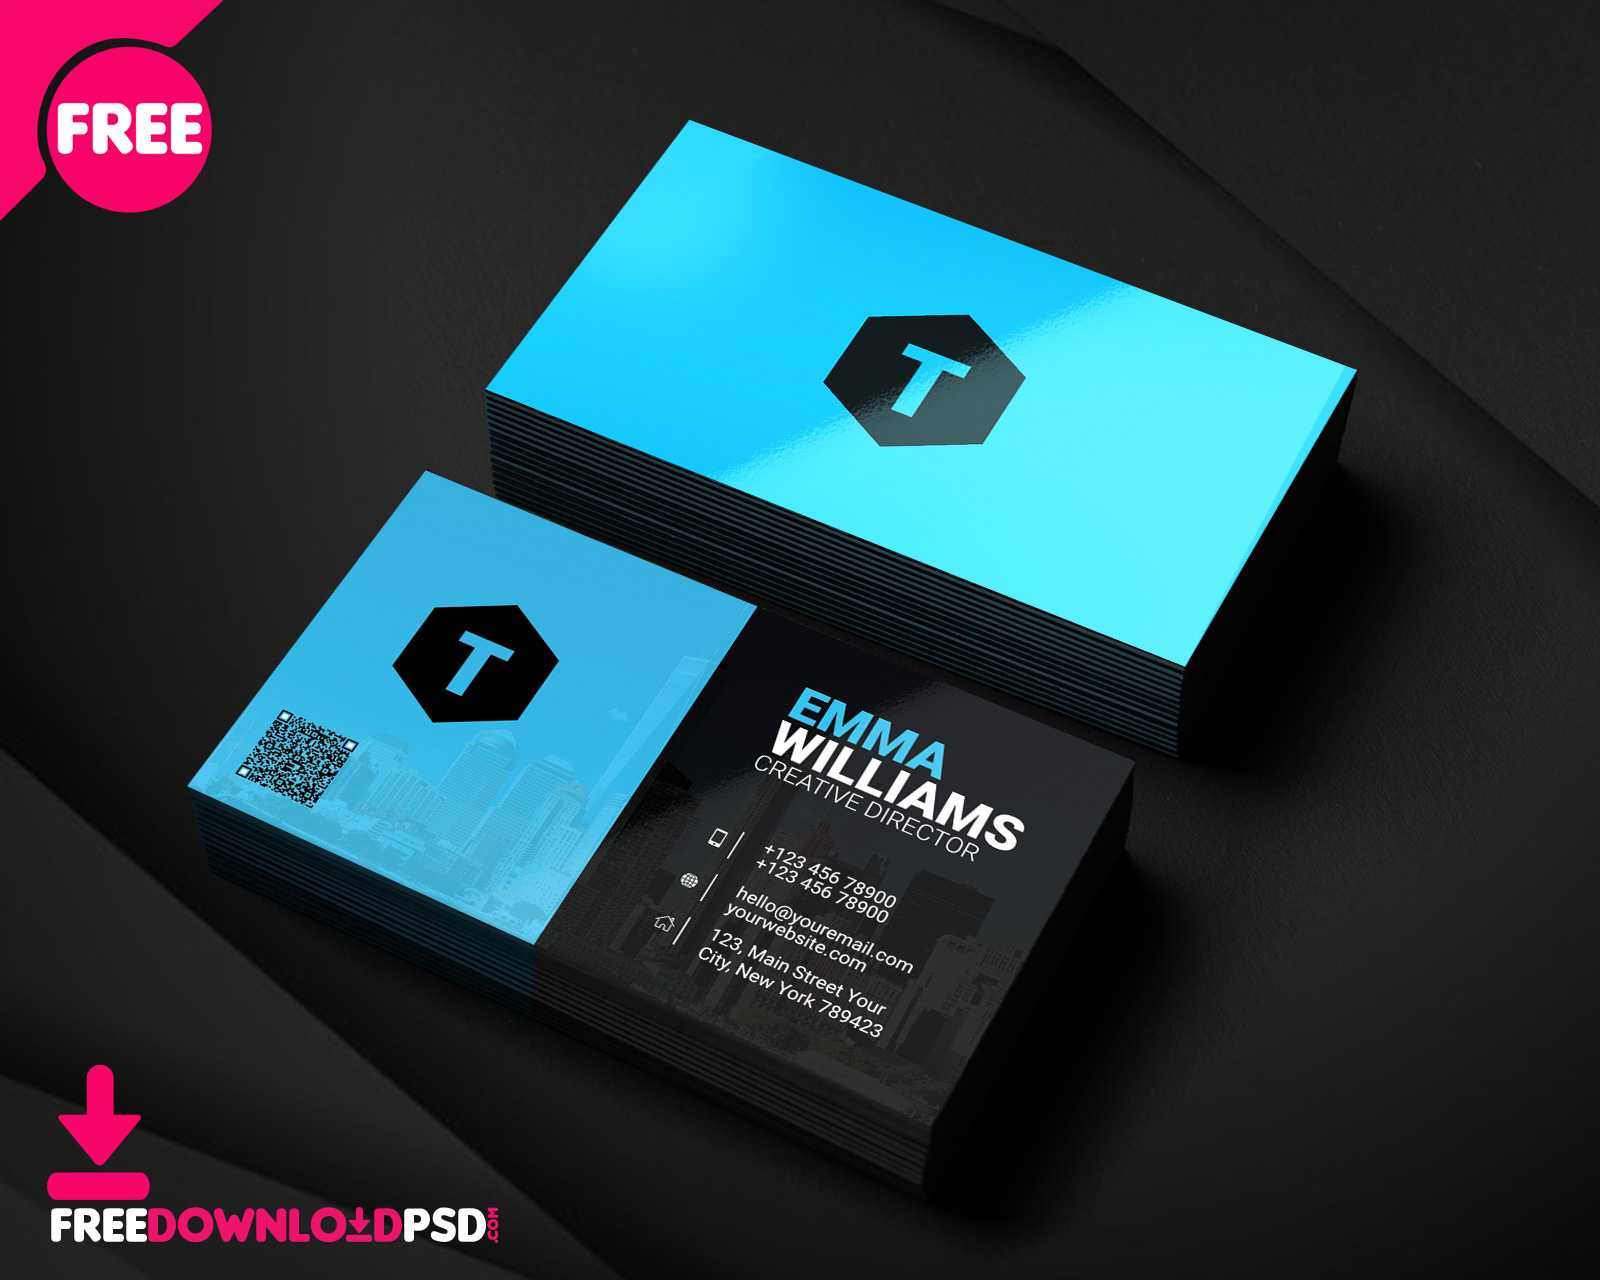 Creative Agency Business Card Psd | Freedownloadpsd Pertaining To Creative Business Card Templates Psd